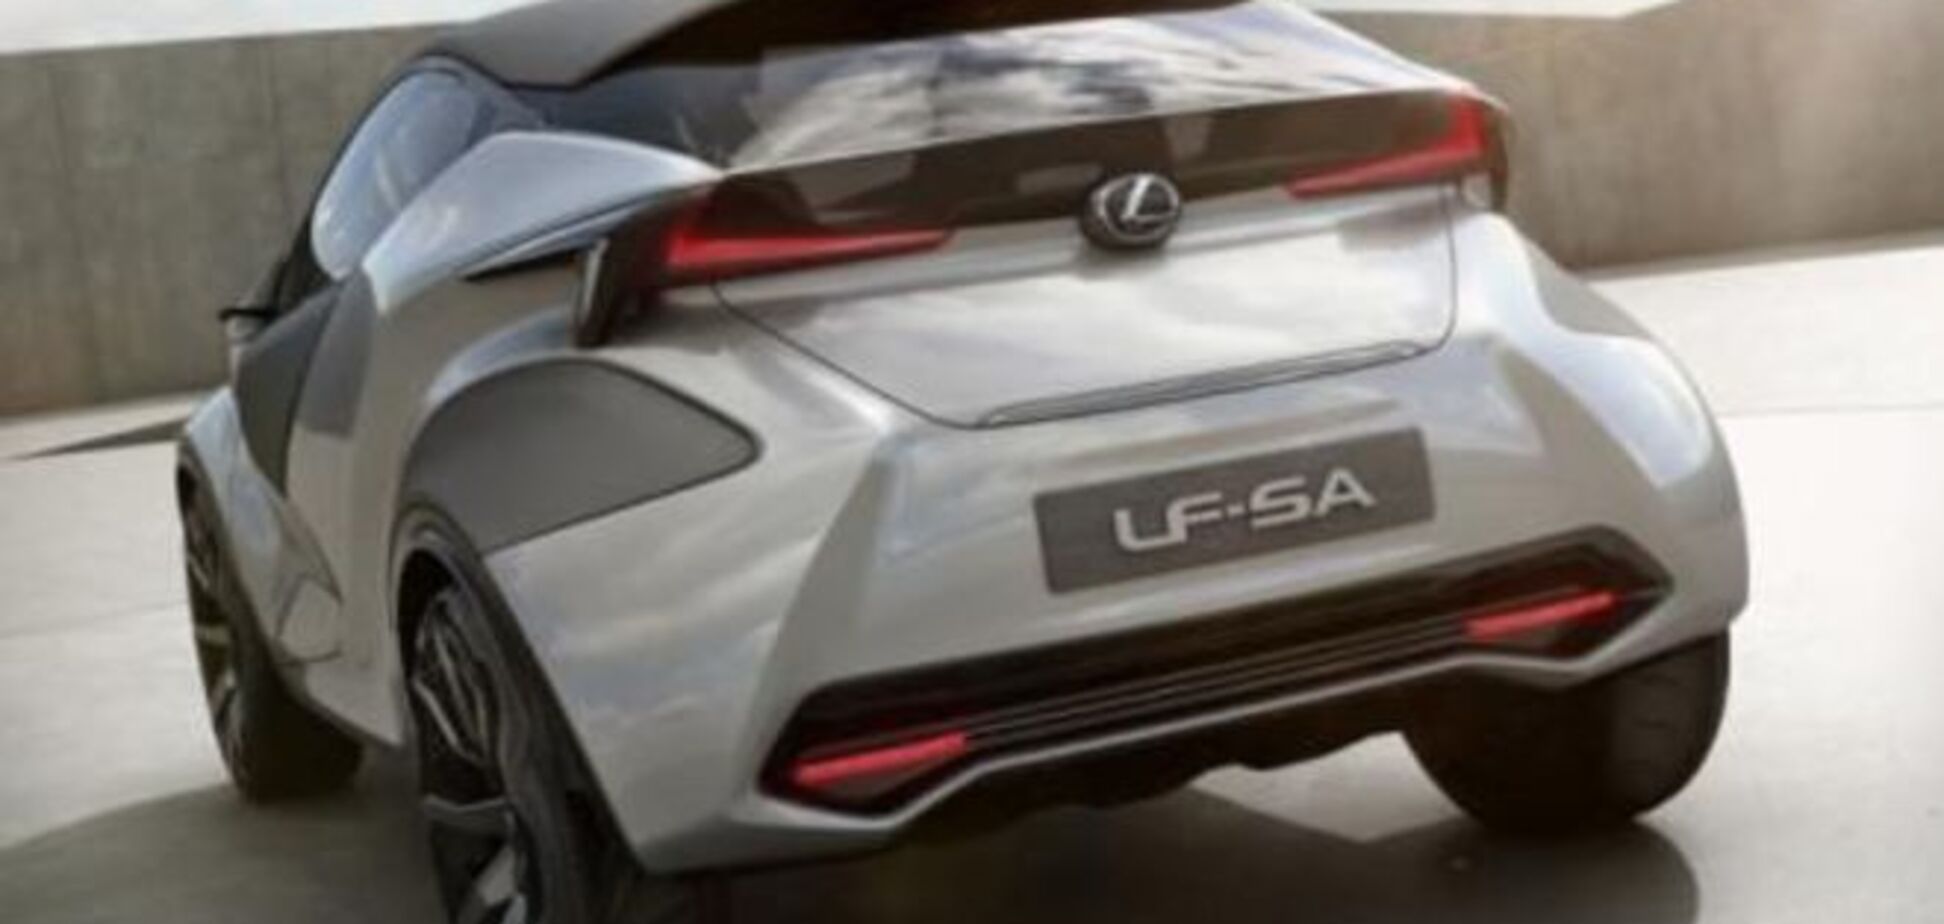 Секретные снимки нового концепта Lexus просочились в интернет 